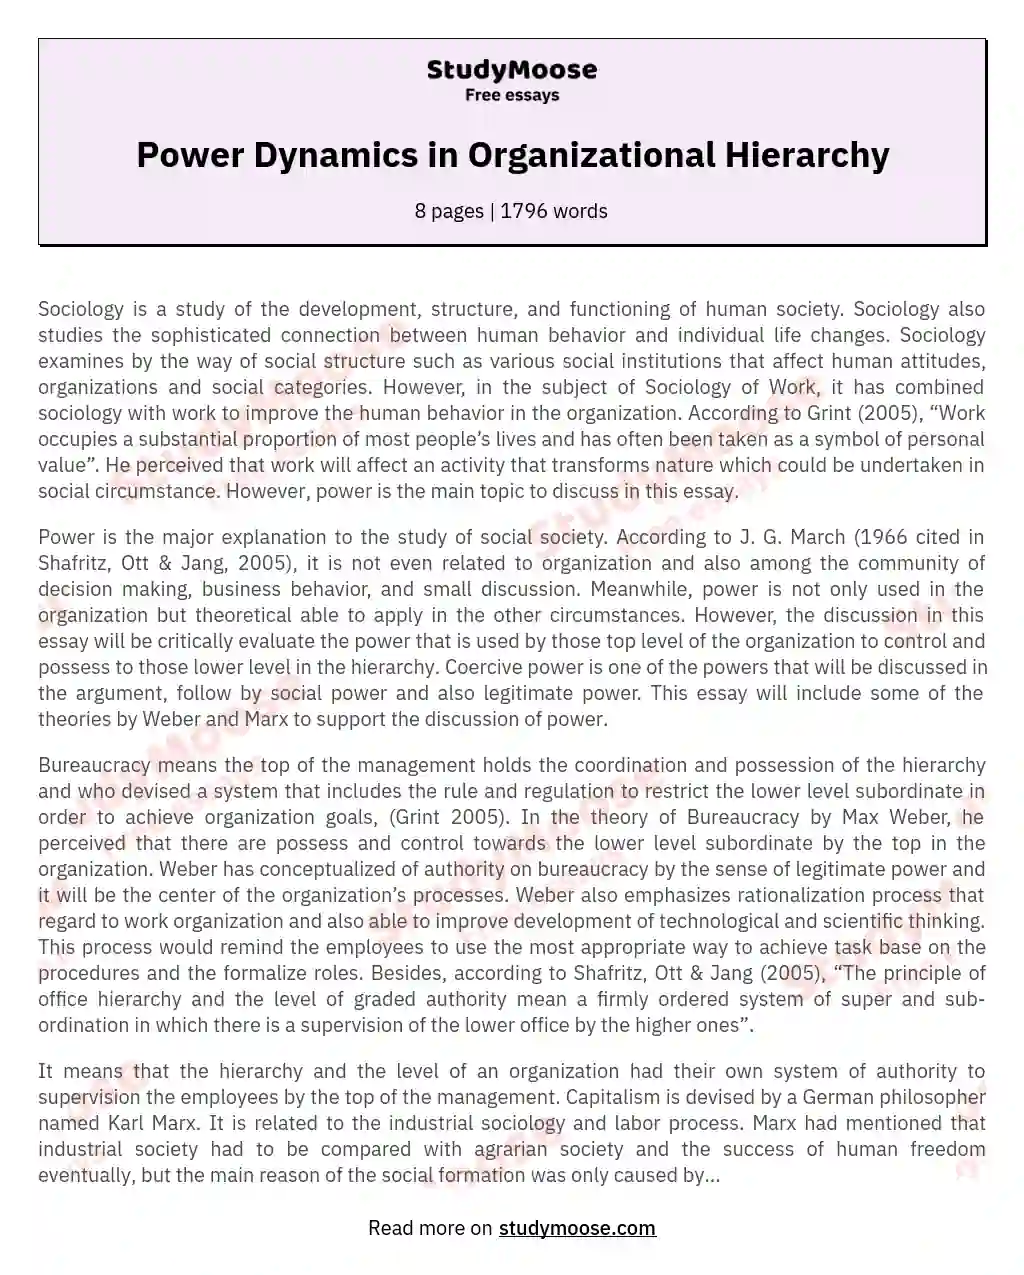 Power Dynamics in Organizational Hierarchy essay